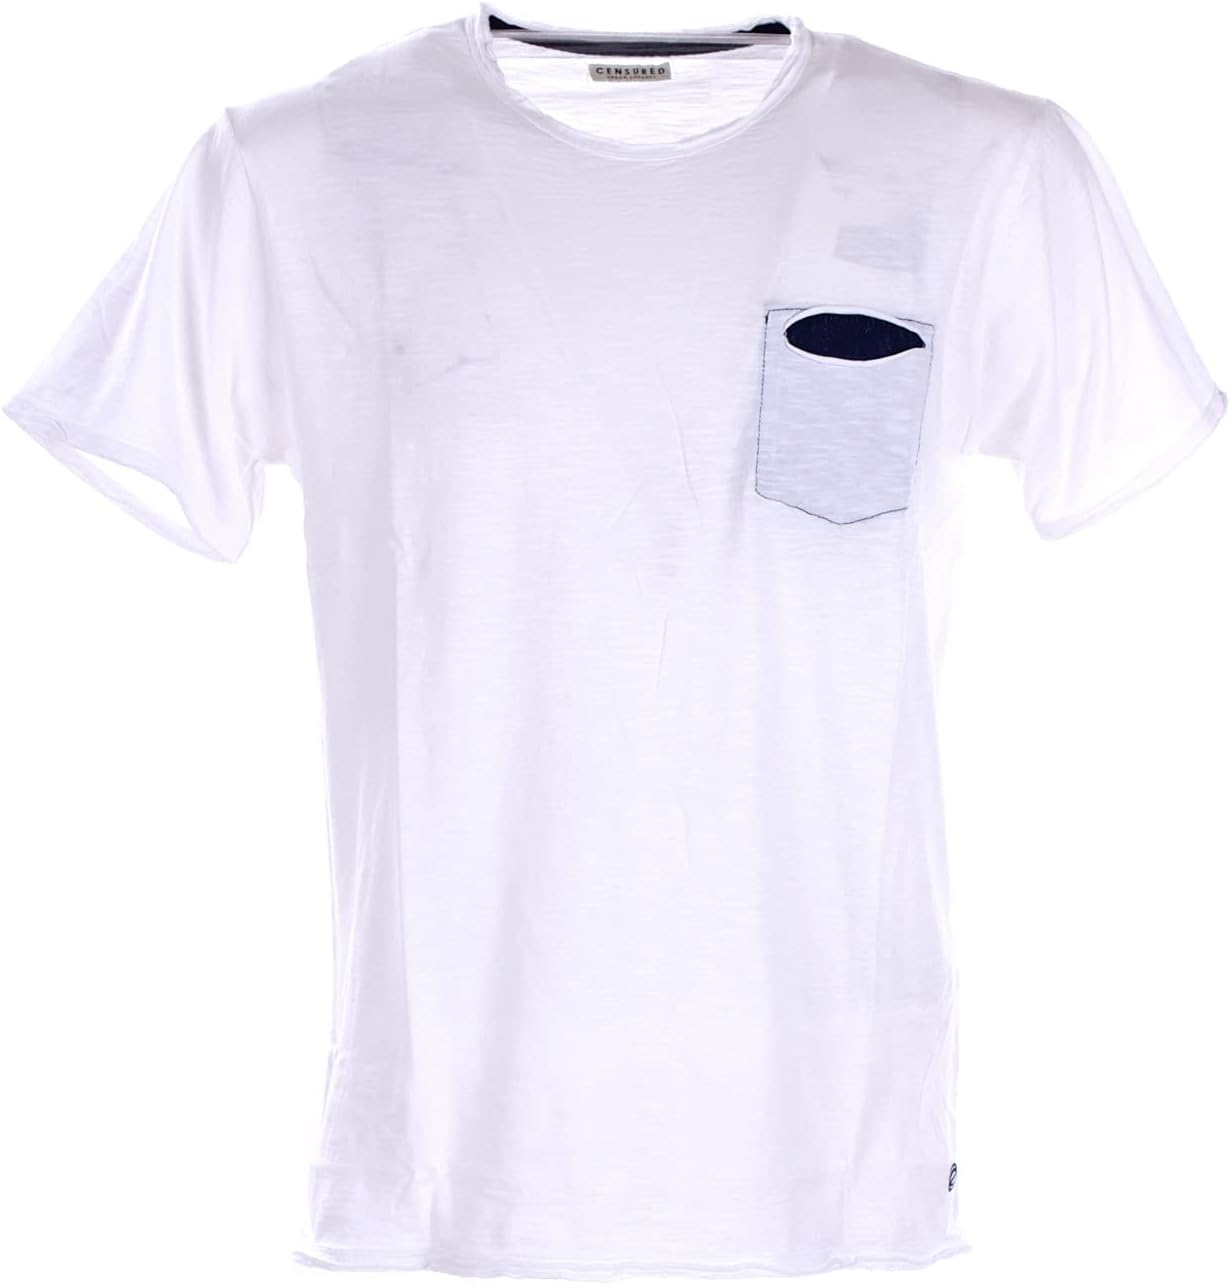 CENSURED T-shirt Uomo - Bianco modello TM3533